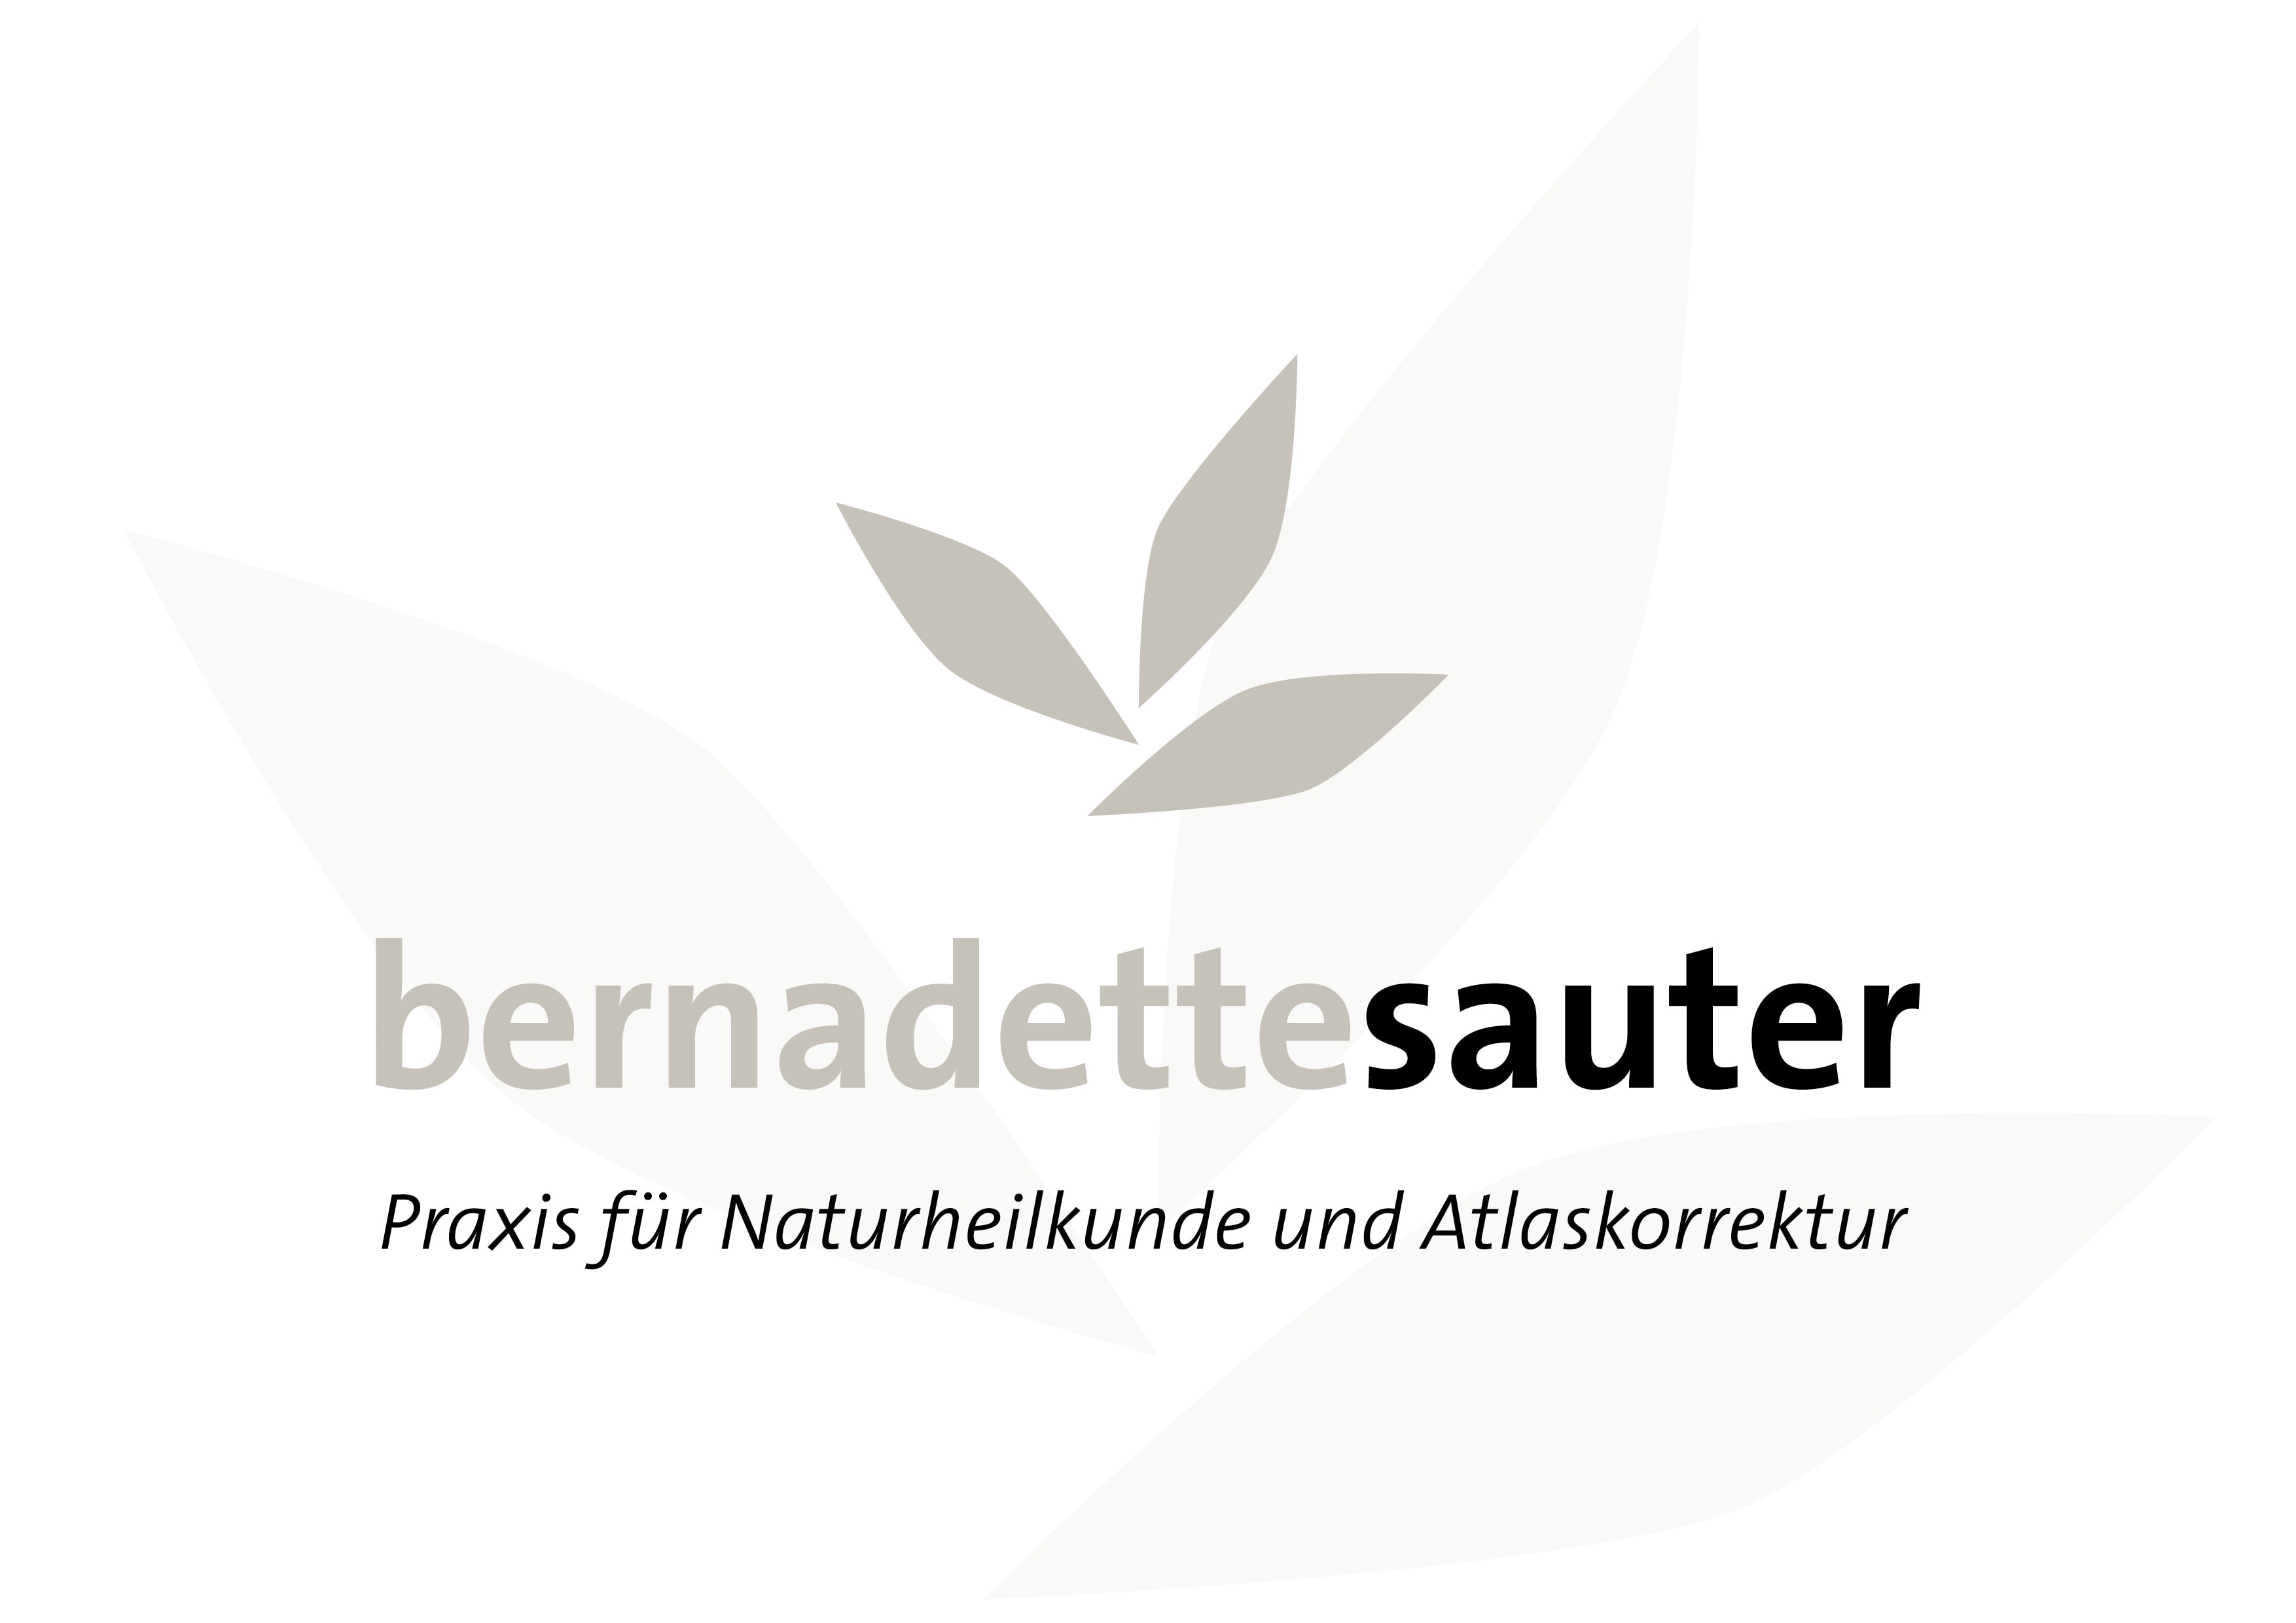 Logo Entwicklung und Programmierung Homepage für Bernadette Sauter, Praxis für Naturheilkunde und Atlaskorrekturdurch Grafik-Designer Ronald Wissler